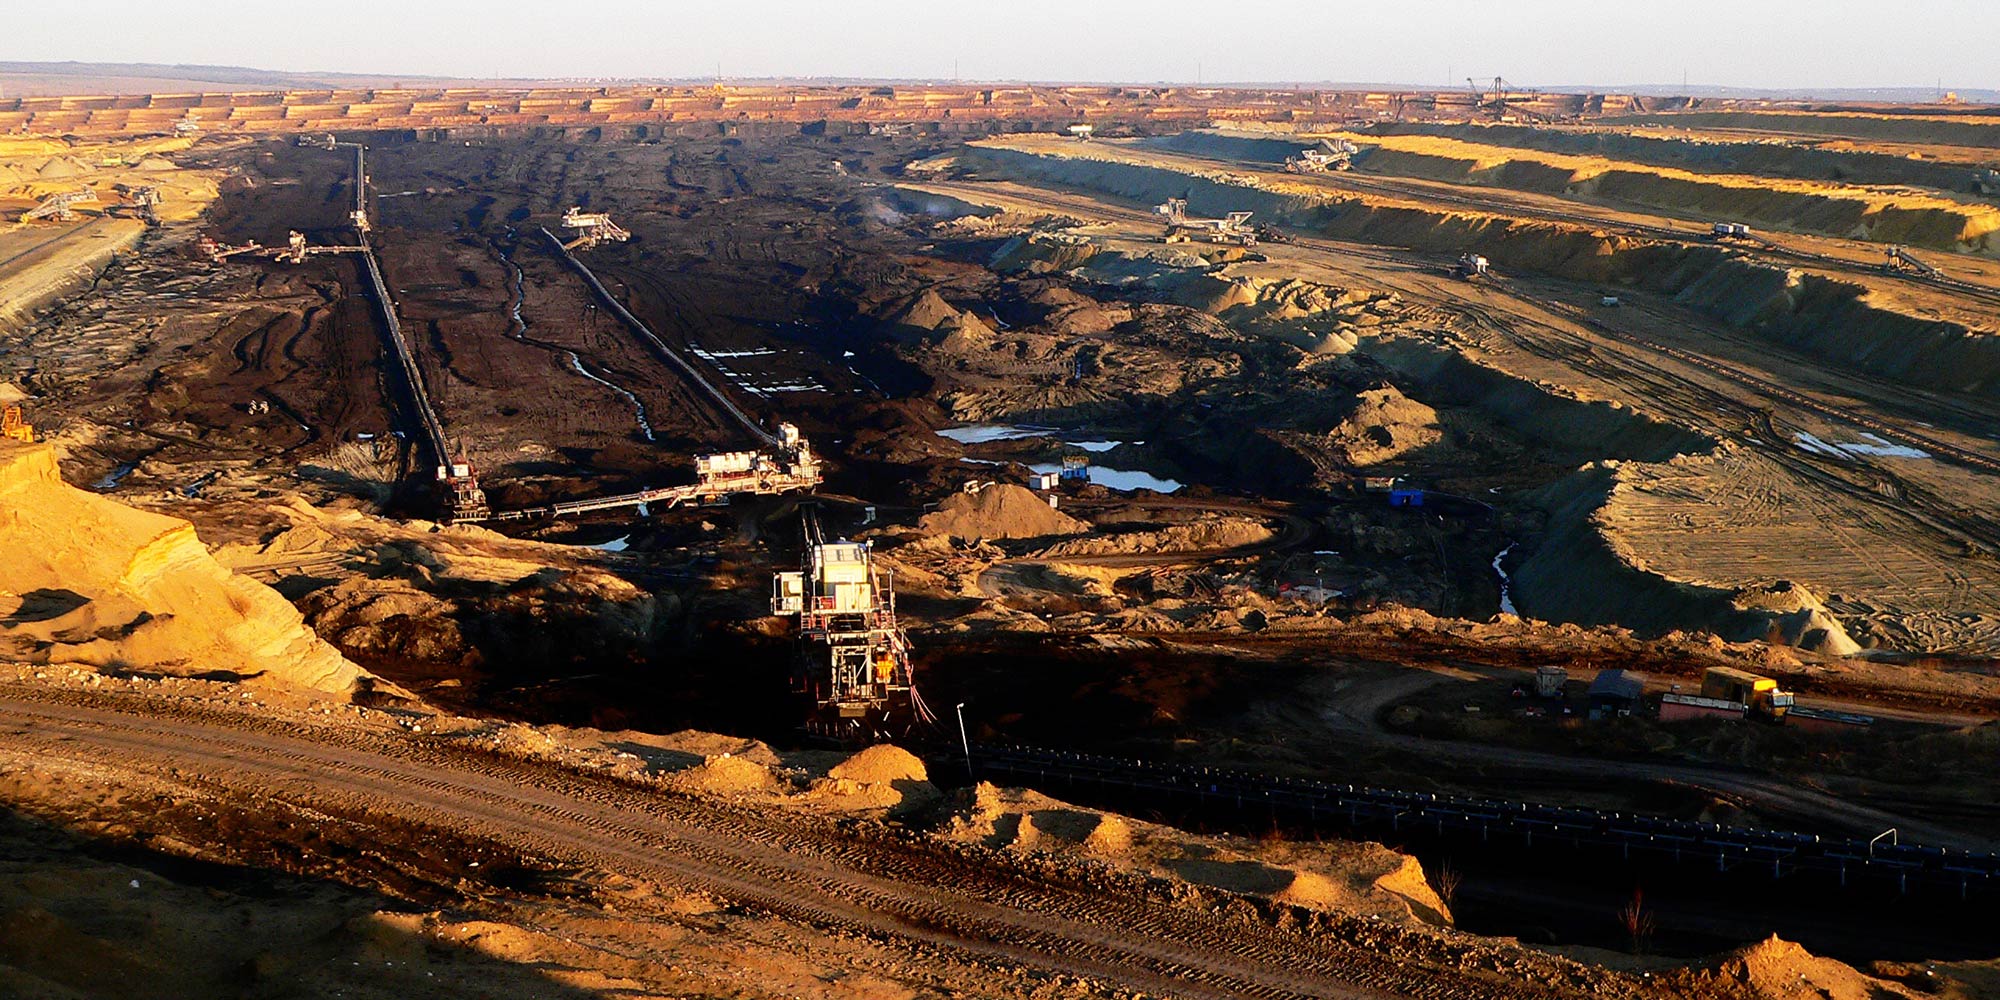 An open mining pit seen.